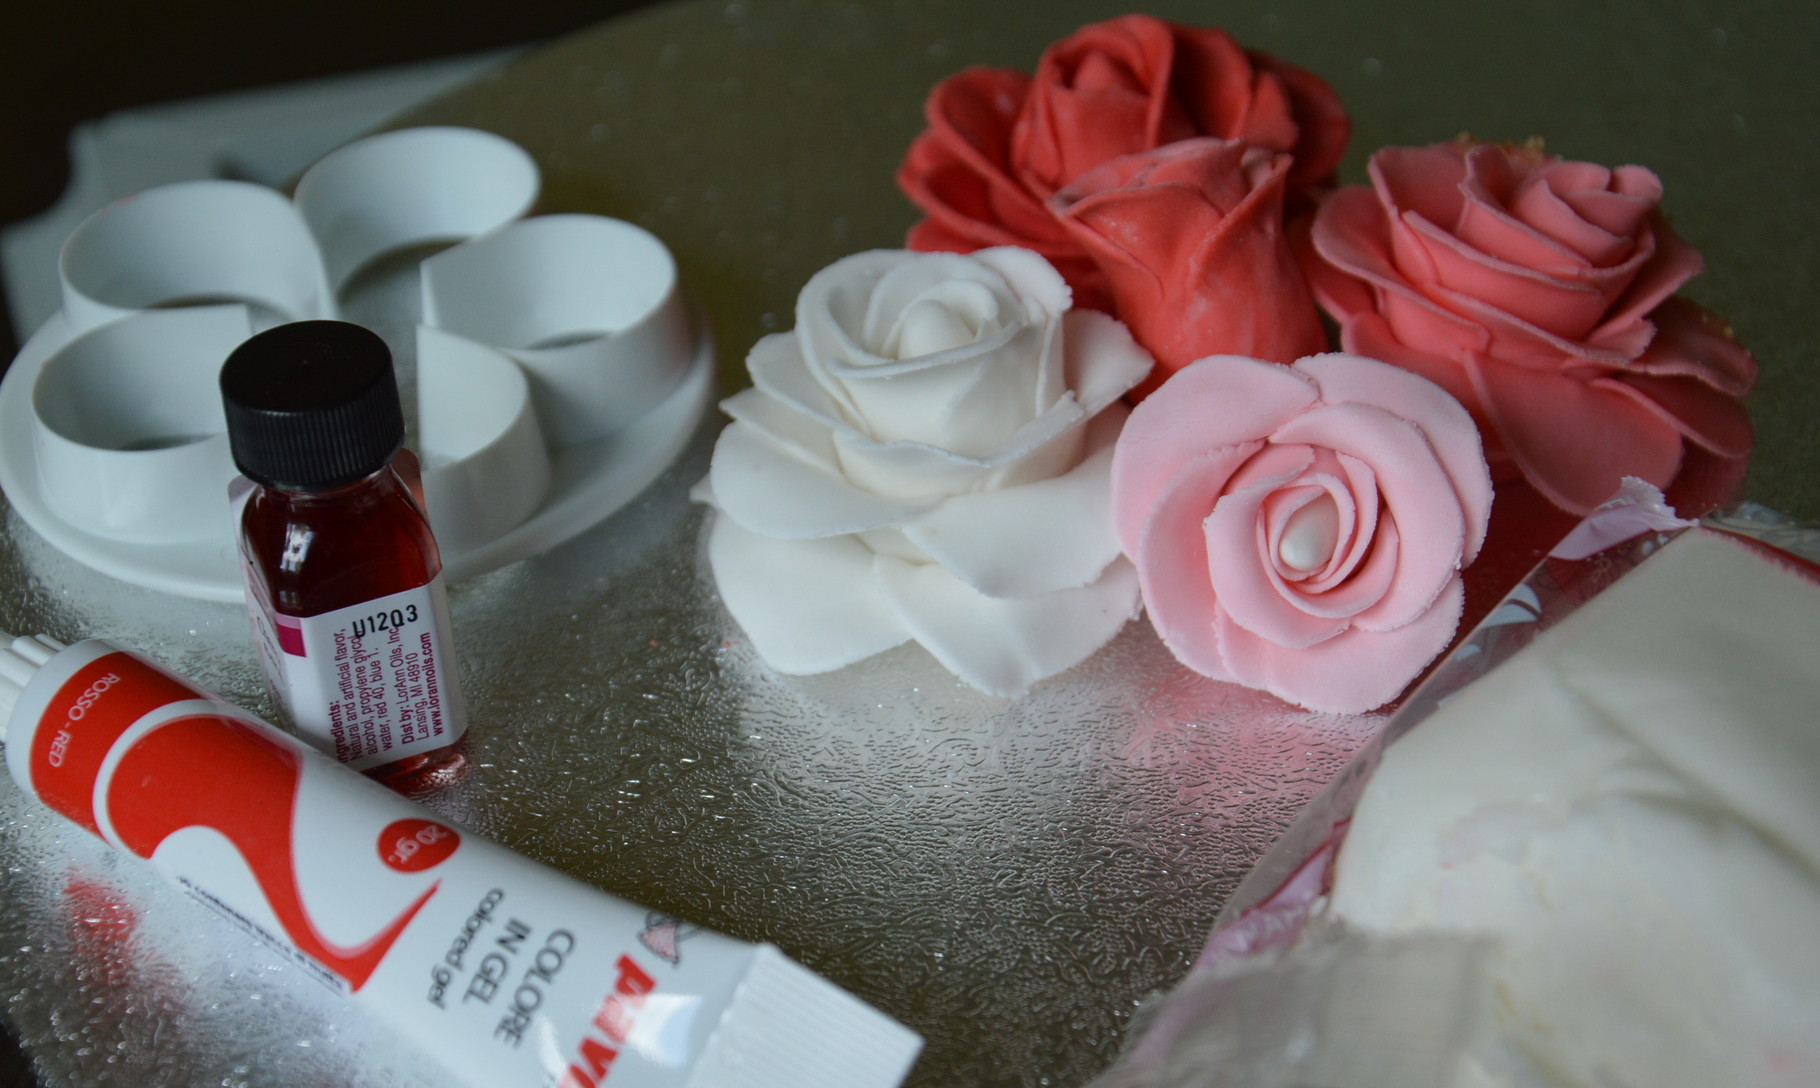 Pirmas bandymas sukurti saldžias rožes tortui papuošti. 